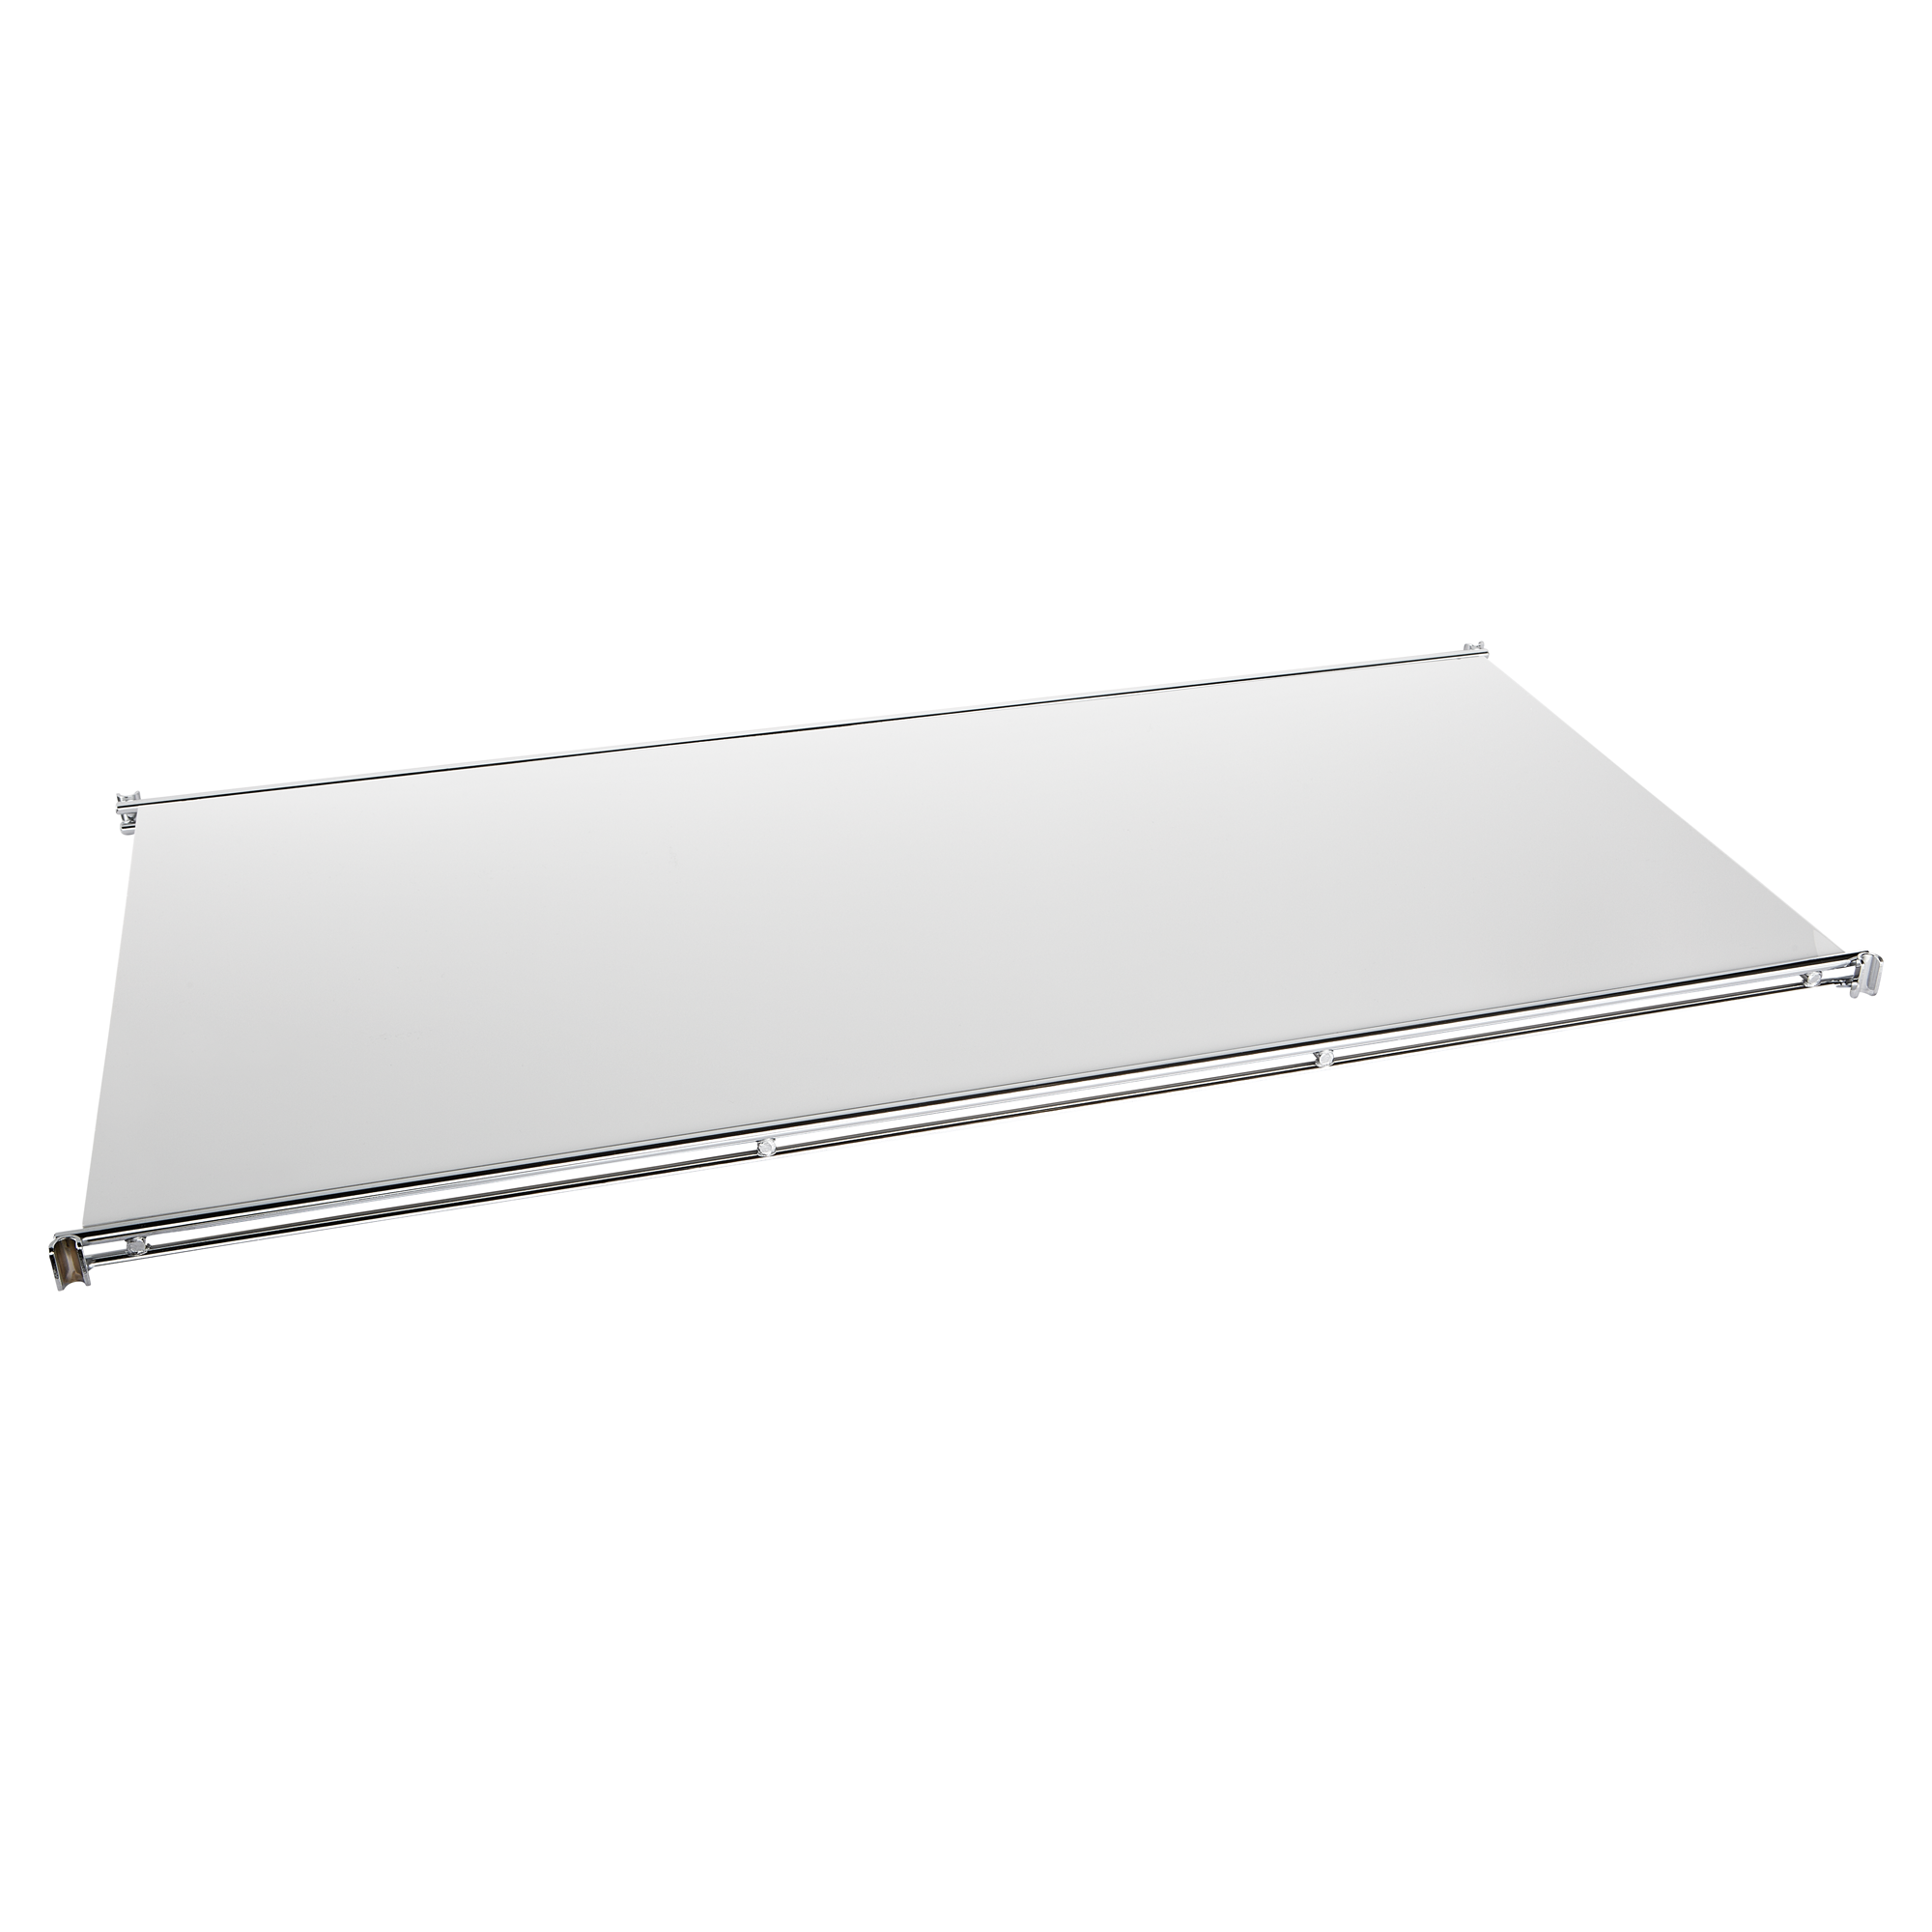 Regalboden ABS weiß 1,95 x 39 x 80 cm + product picture